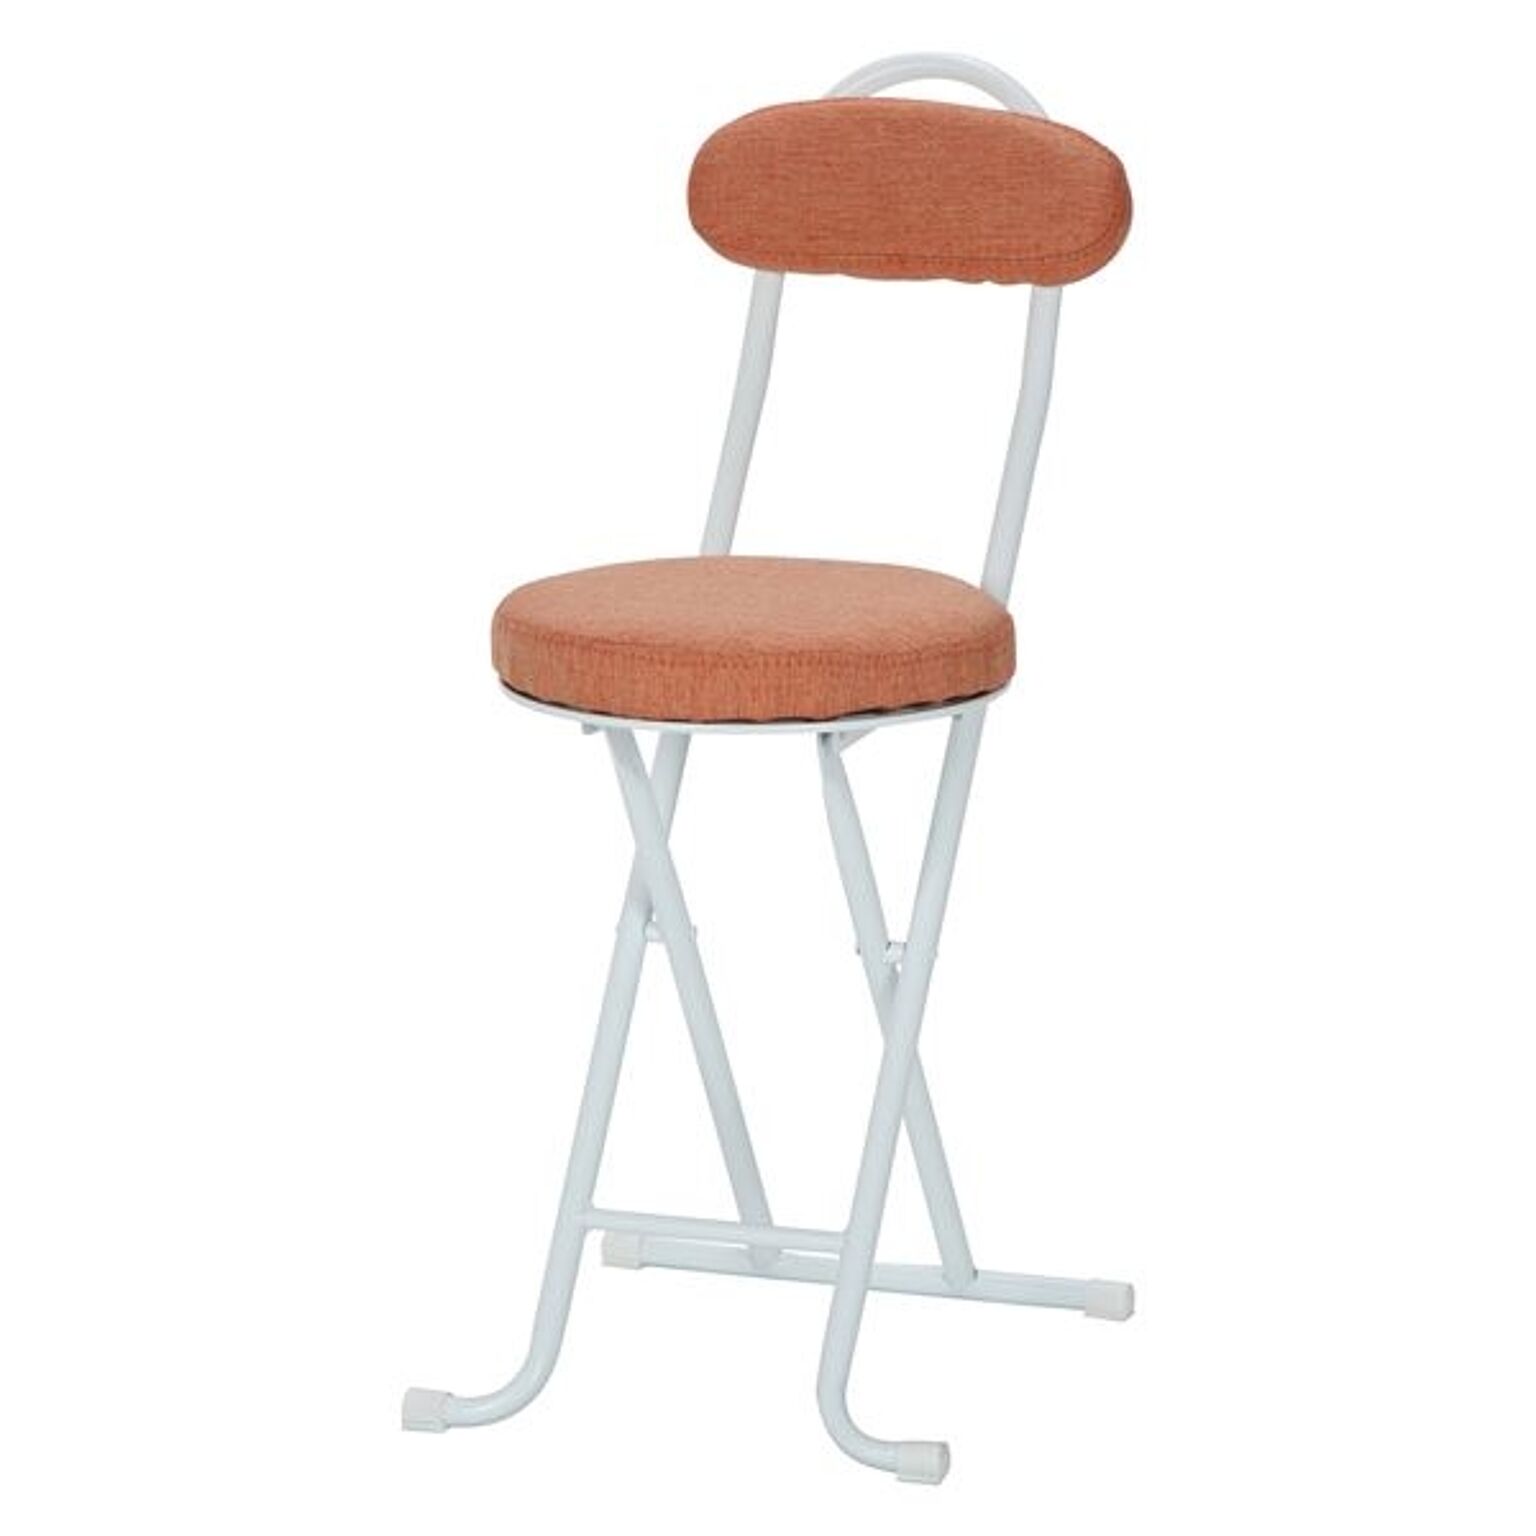 折りたたみ椅子 折り畳み椅子 幅35.5cm オレンジ 4個セット スチール 収納便利 ファブリックスリムチェア リビング ダイニング【代引不可】